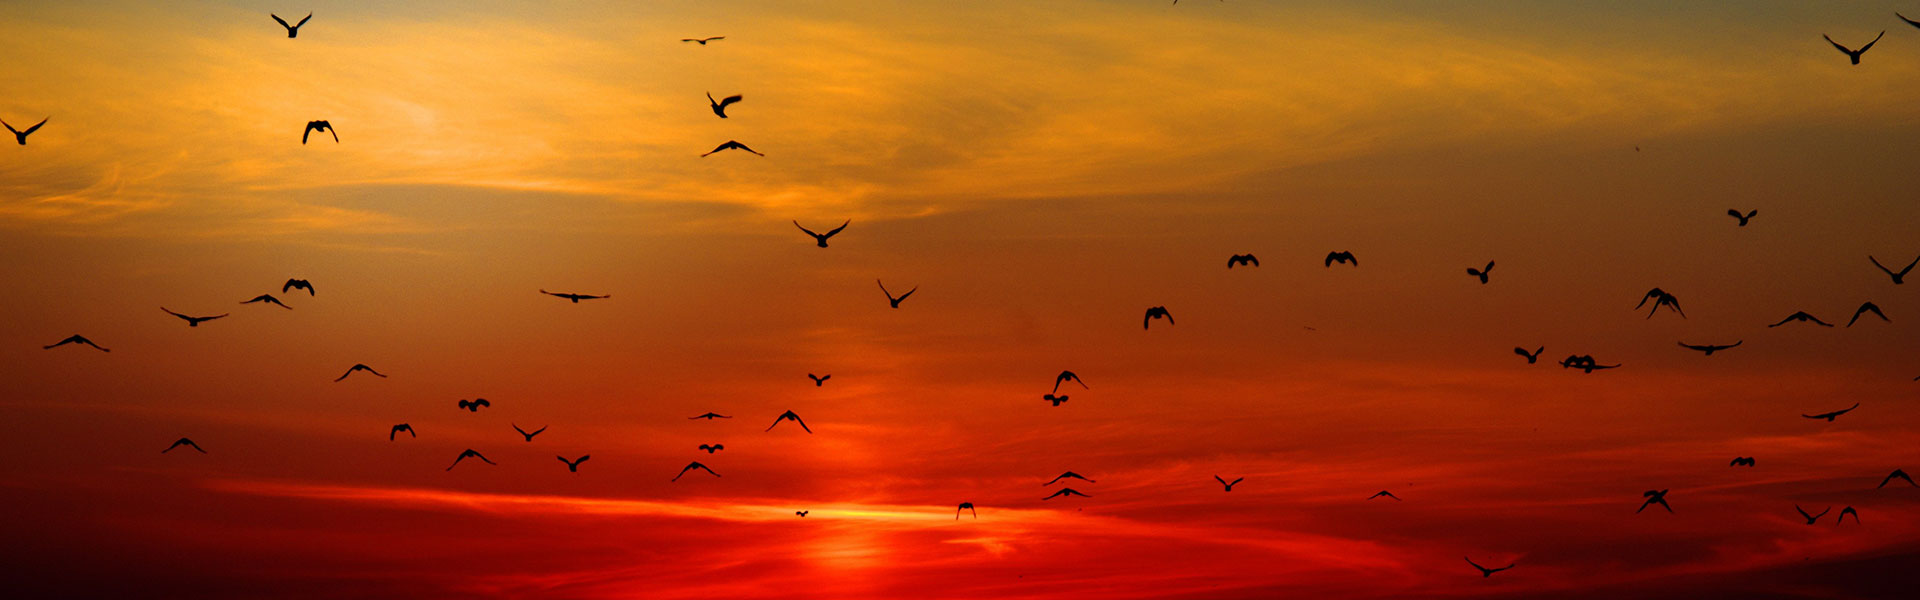 Birds flying in sunset sky